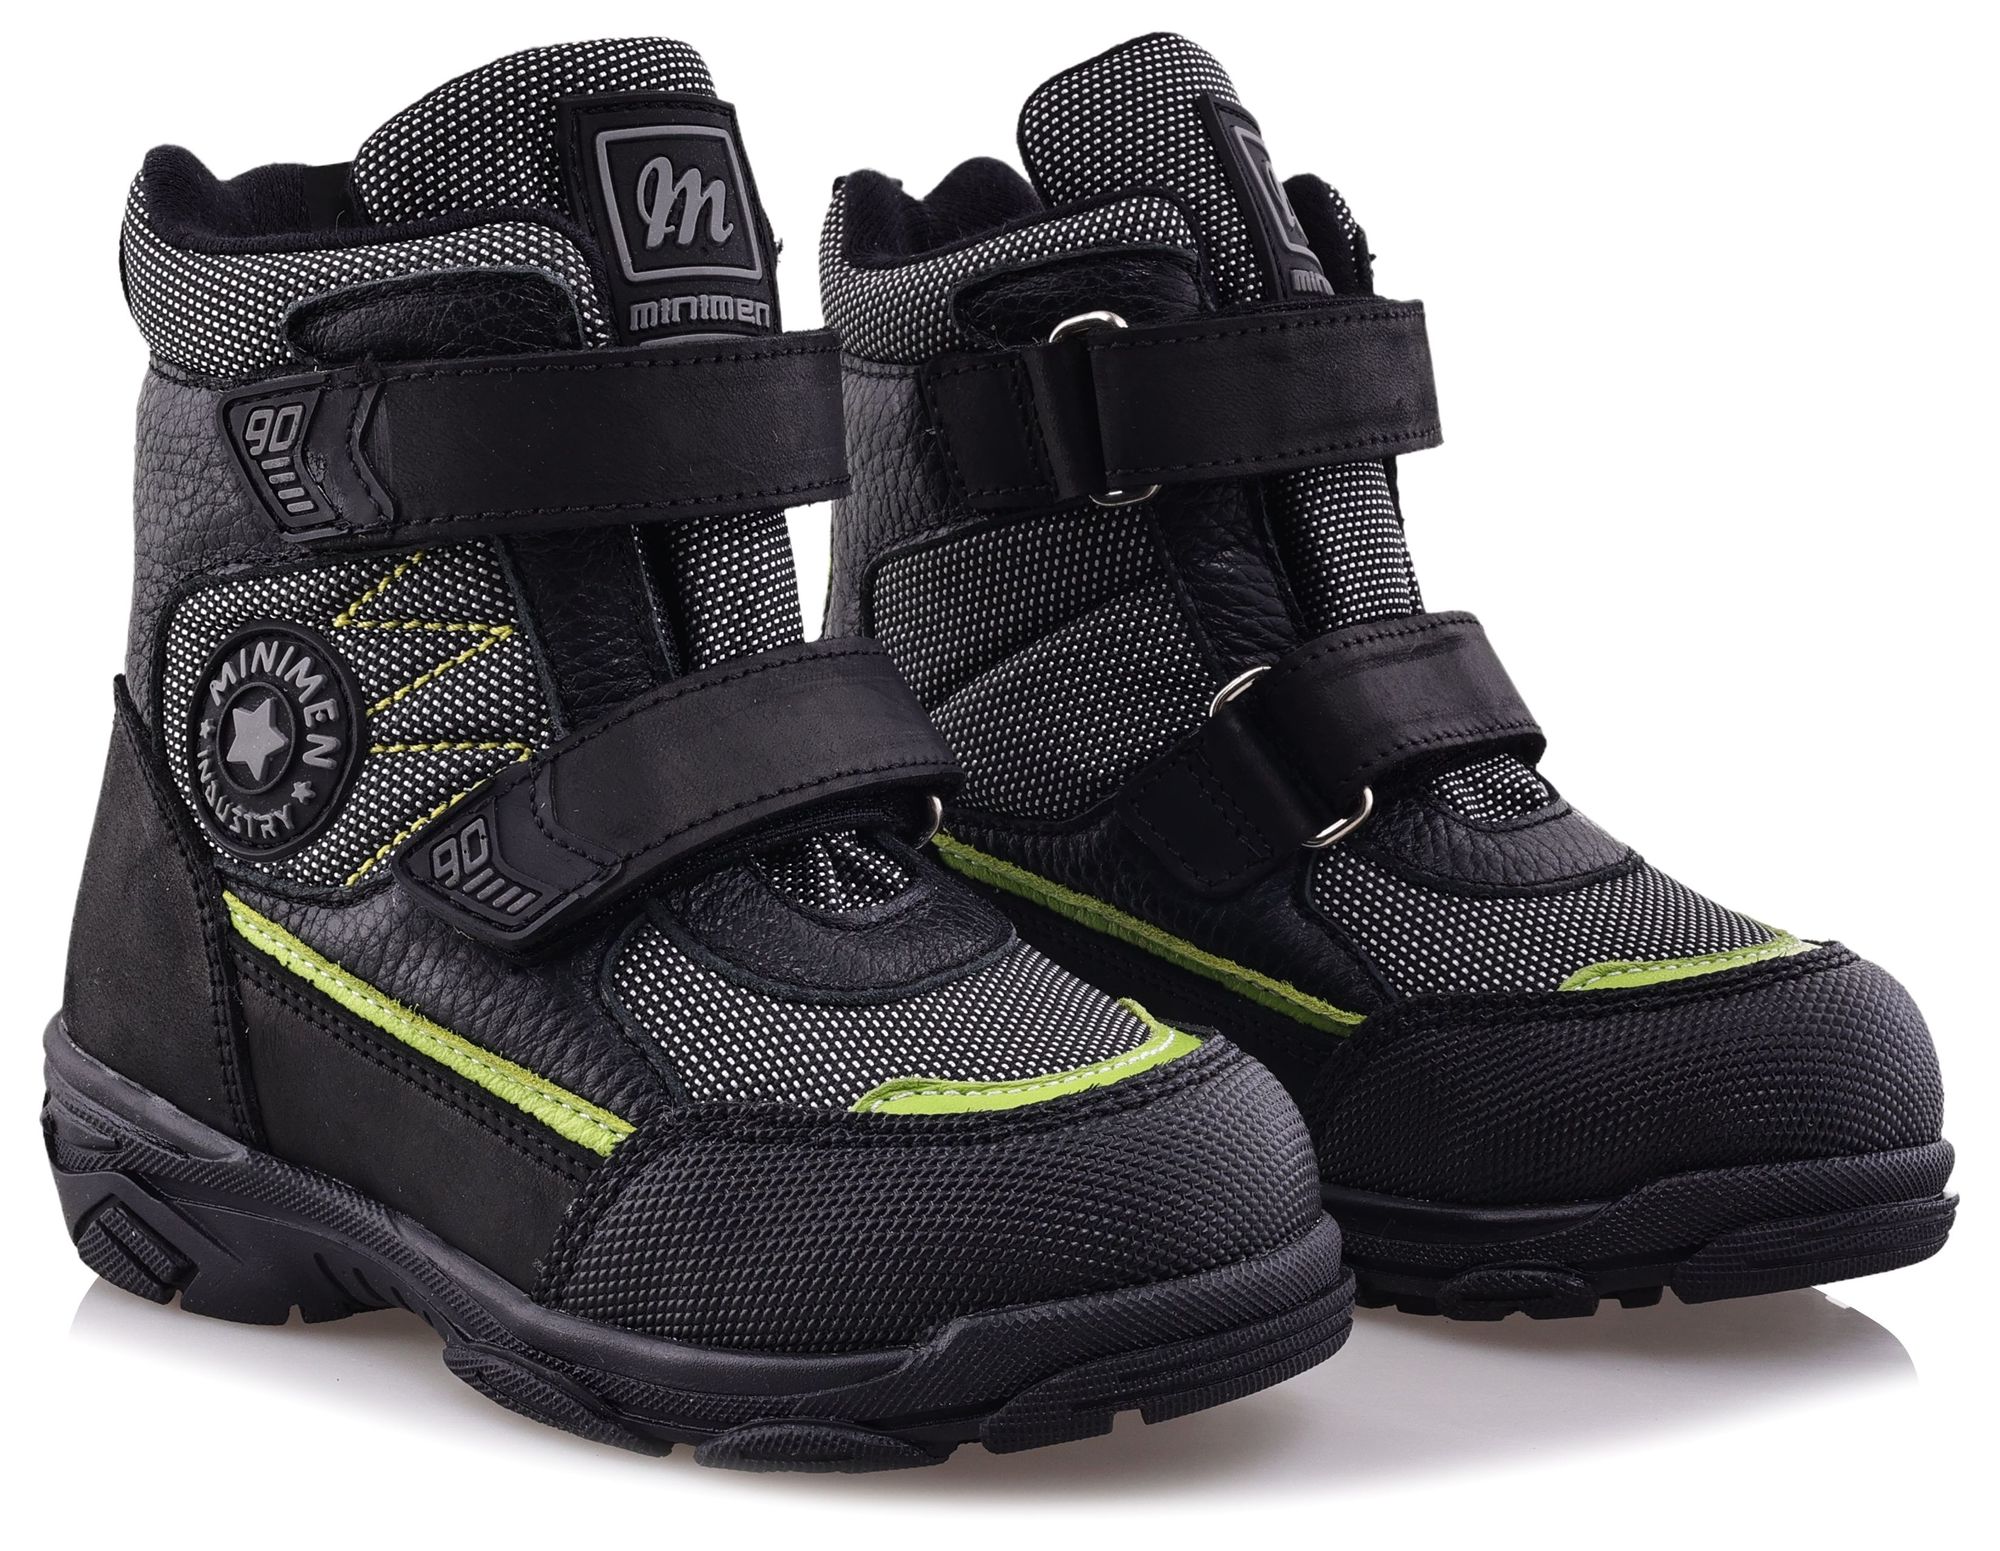 Ботинки Minimen для мальчиков, чёрные, размер 30, 2657-63-23B-02